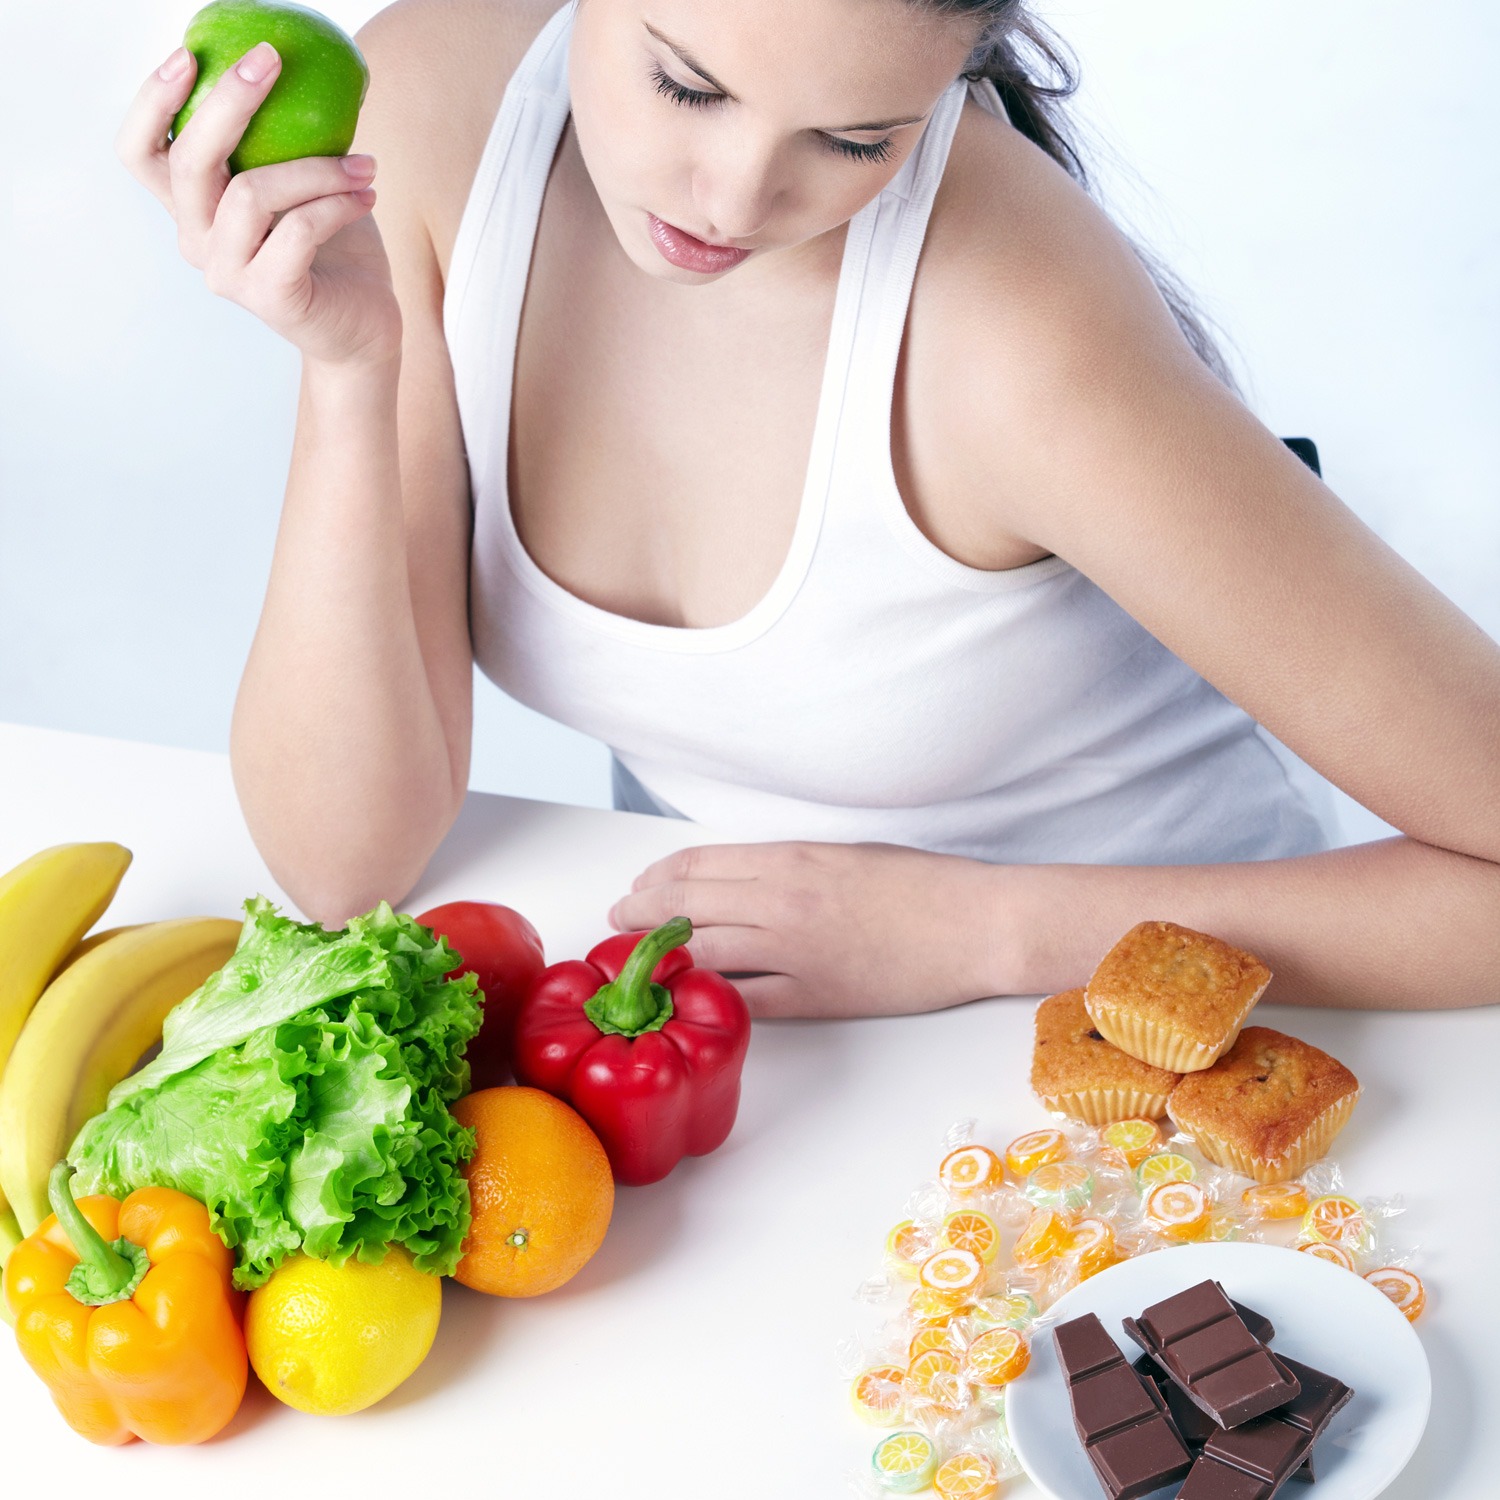 Яичная диета на неделю - подробное меню, рецепты с кефиром или апельсинами, результаты и отзывы